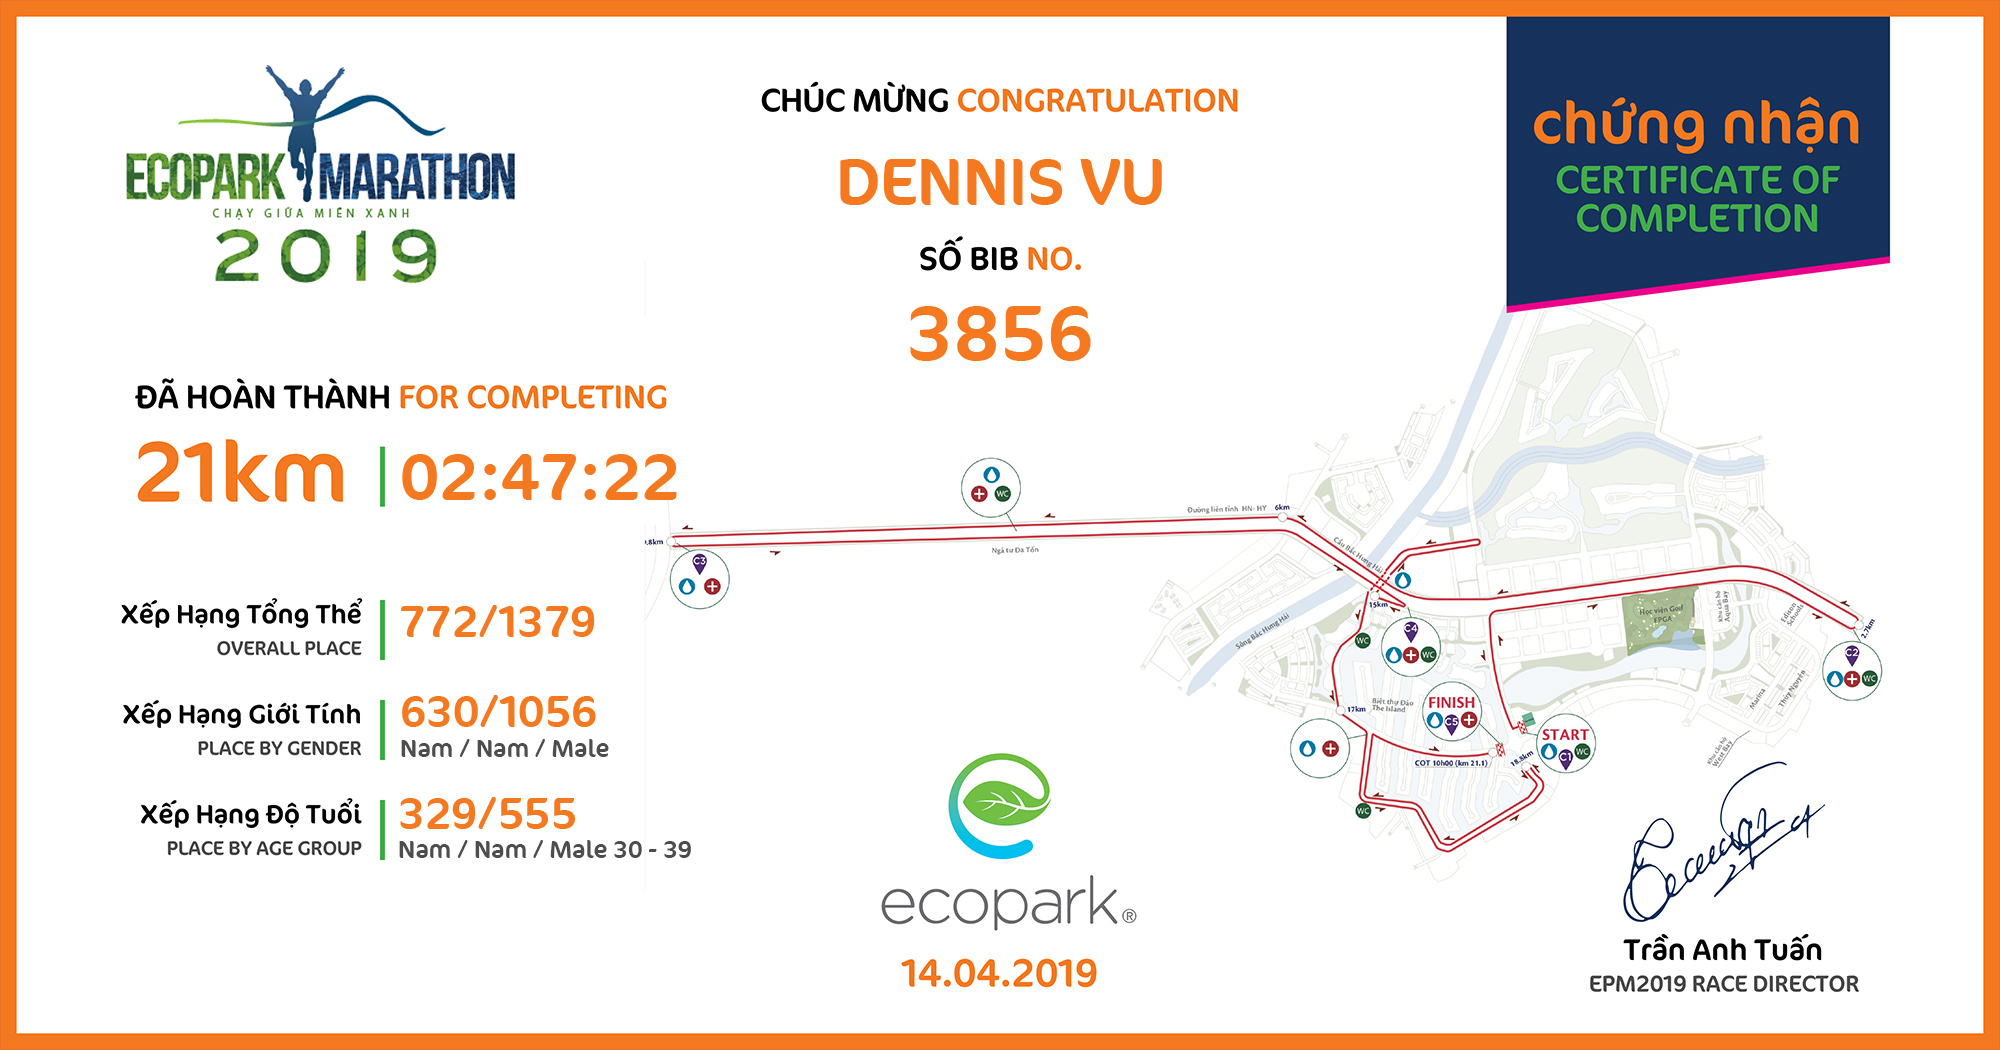 3856 - Dennis Vu